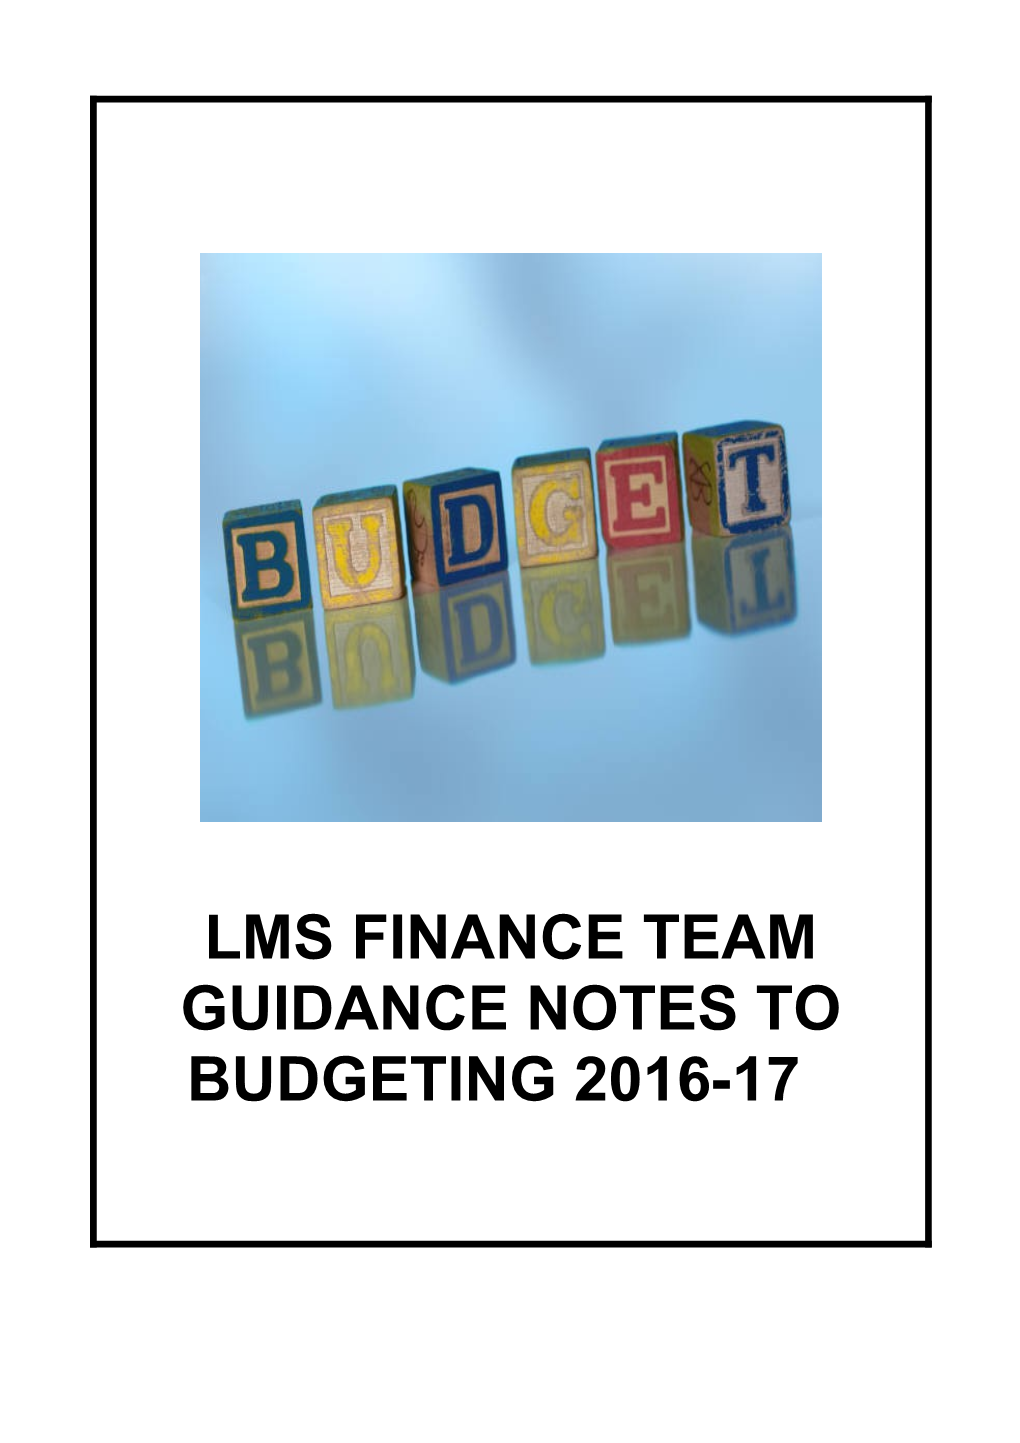 Final Budget Guidance Notes 2016-17